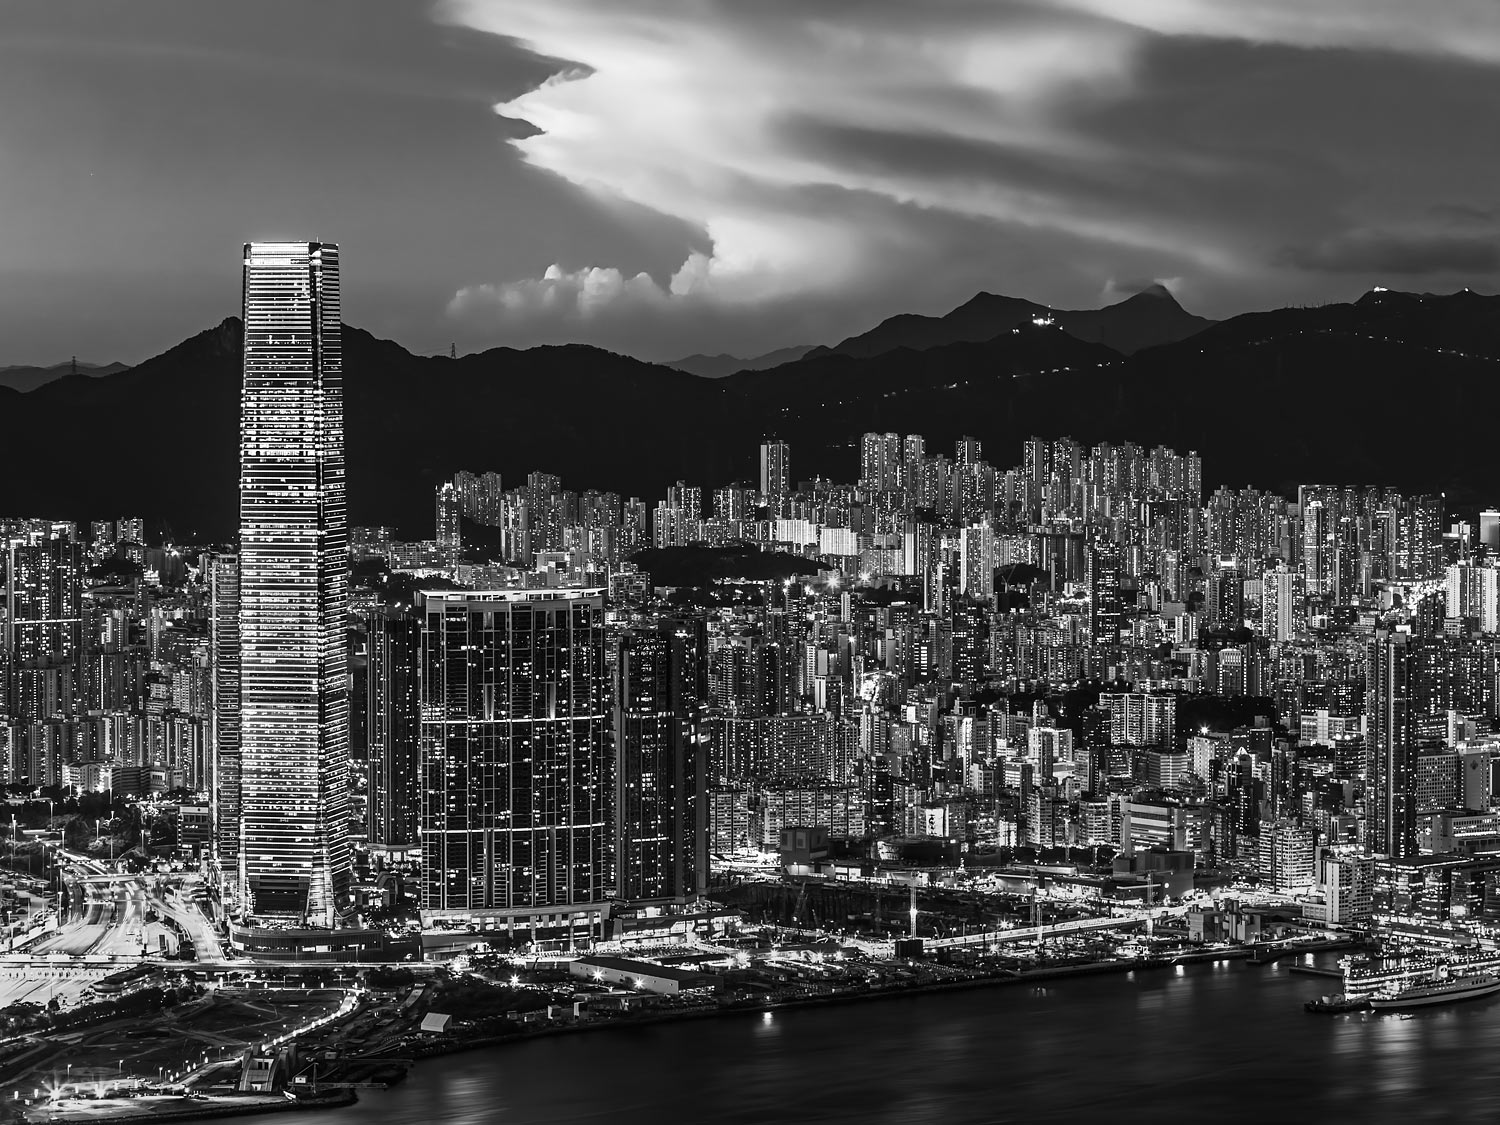 The Lights of Kowloon, Hong Kong